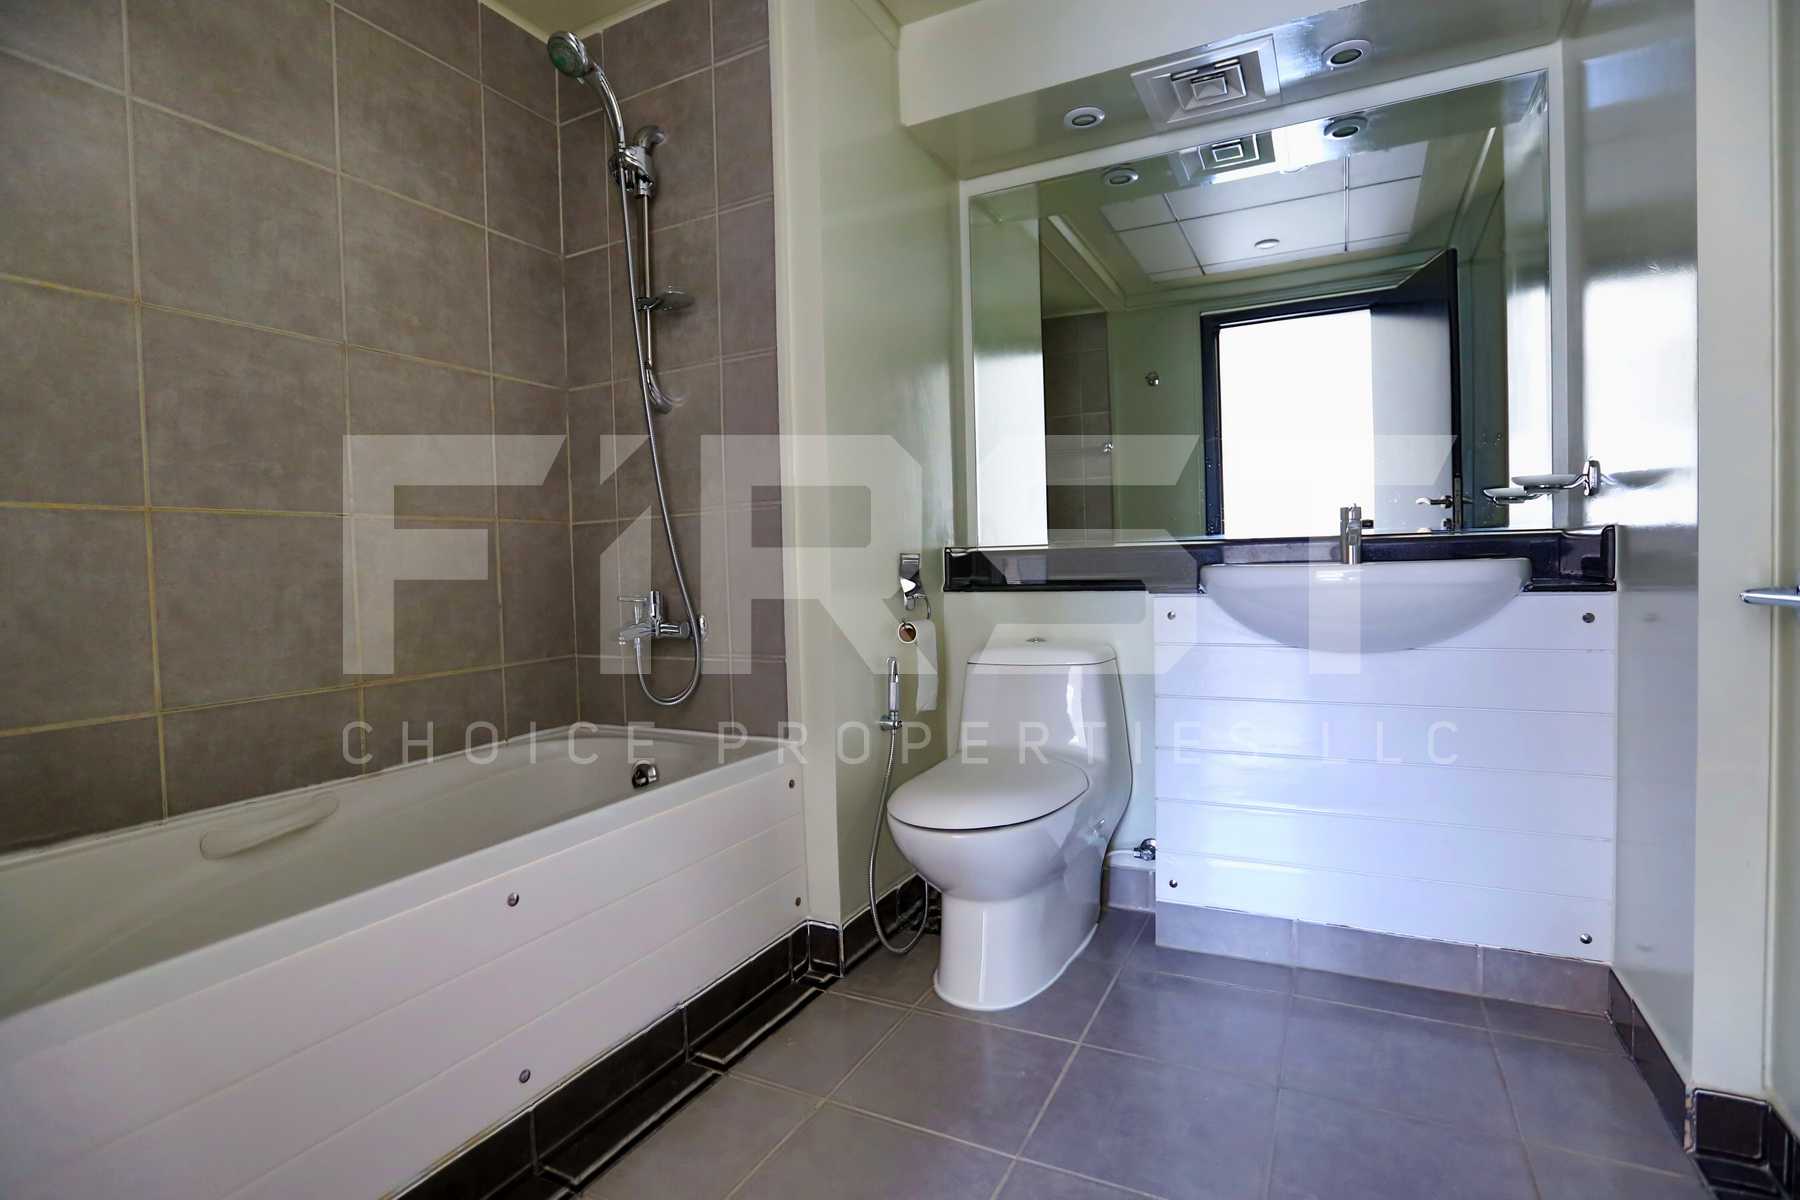 Internal Photo of 2 Bedroom Apartment Type B in Al Reef Downtown Al Reef Abu Dhabi UAE 114 sq.m 1227 (16).jpg